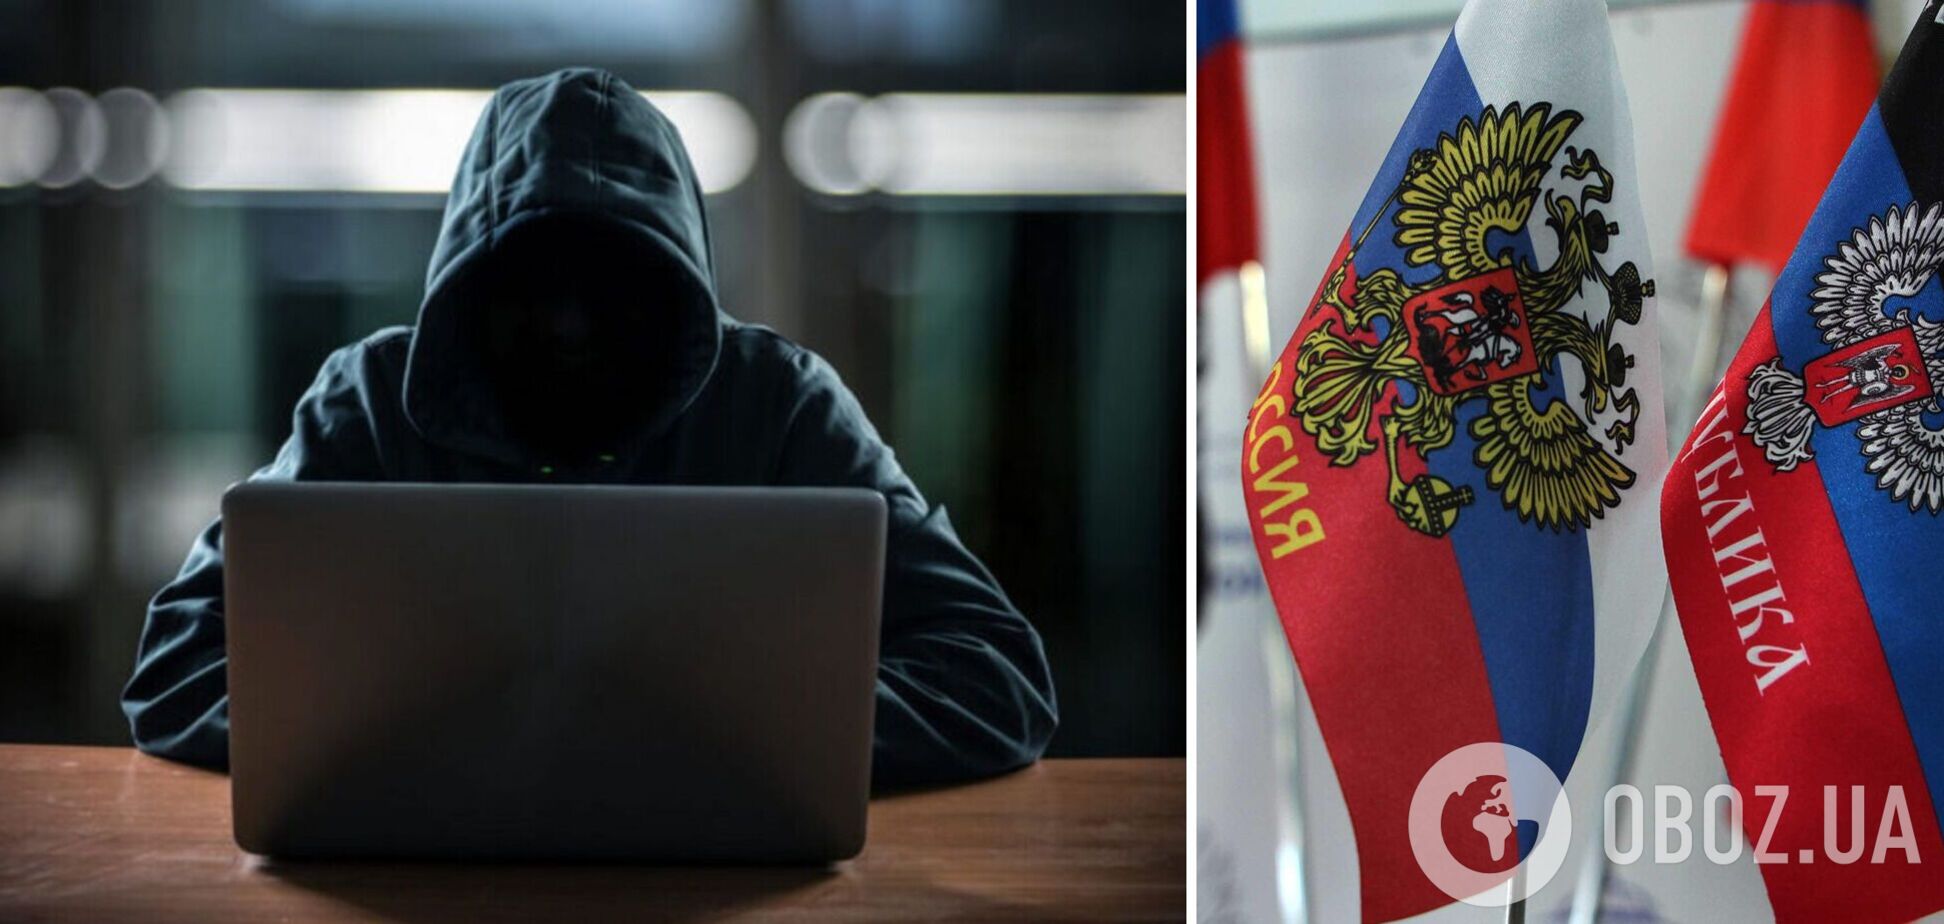 Сайты органов власти Украины атаковали хакеры с территории 'ЛНР': что известно